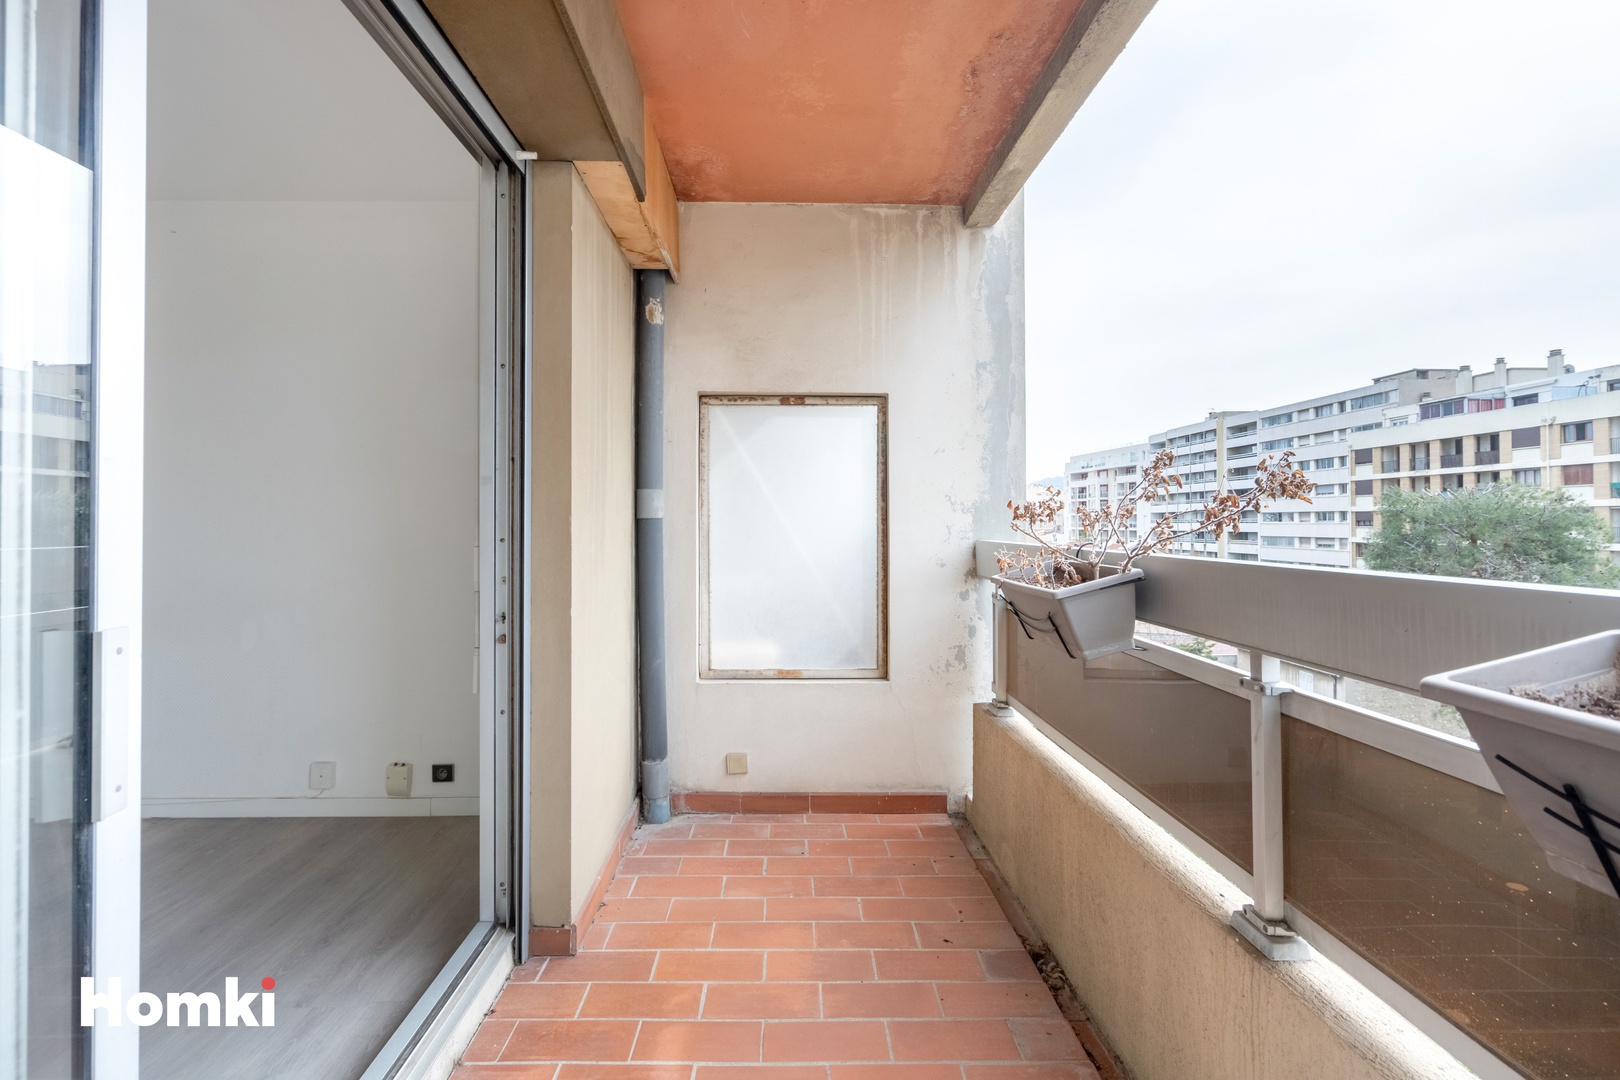 Homki - Vente Appartement  de 24.0 m² à Marseille 13010